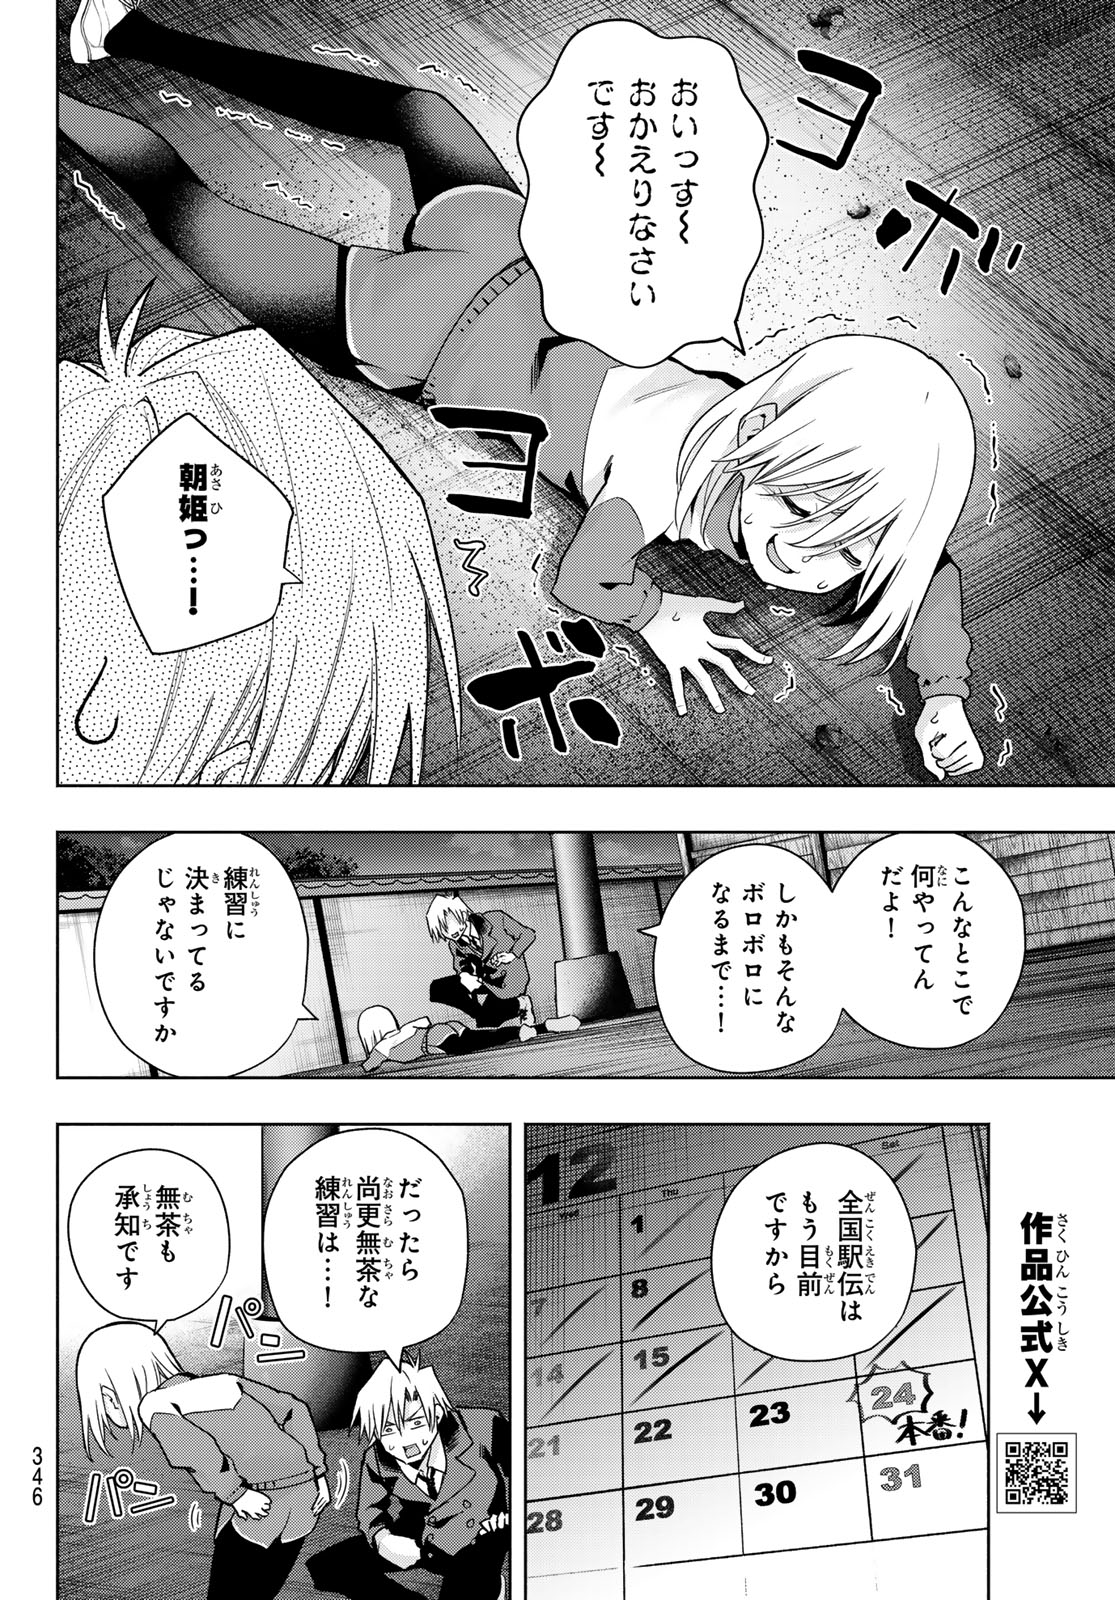 Amagami-san Chi no Enmusubi - Chapter 136 - Page 8